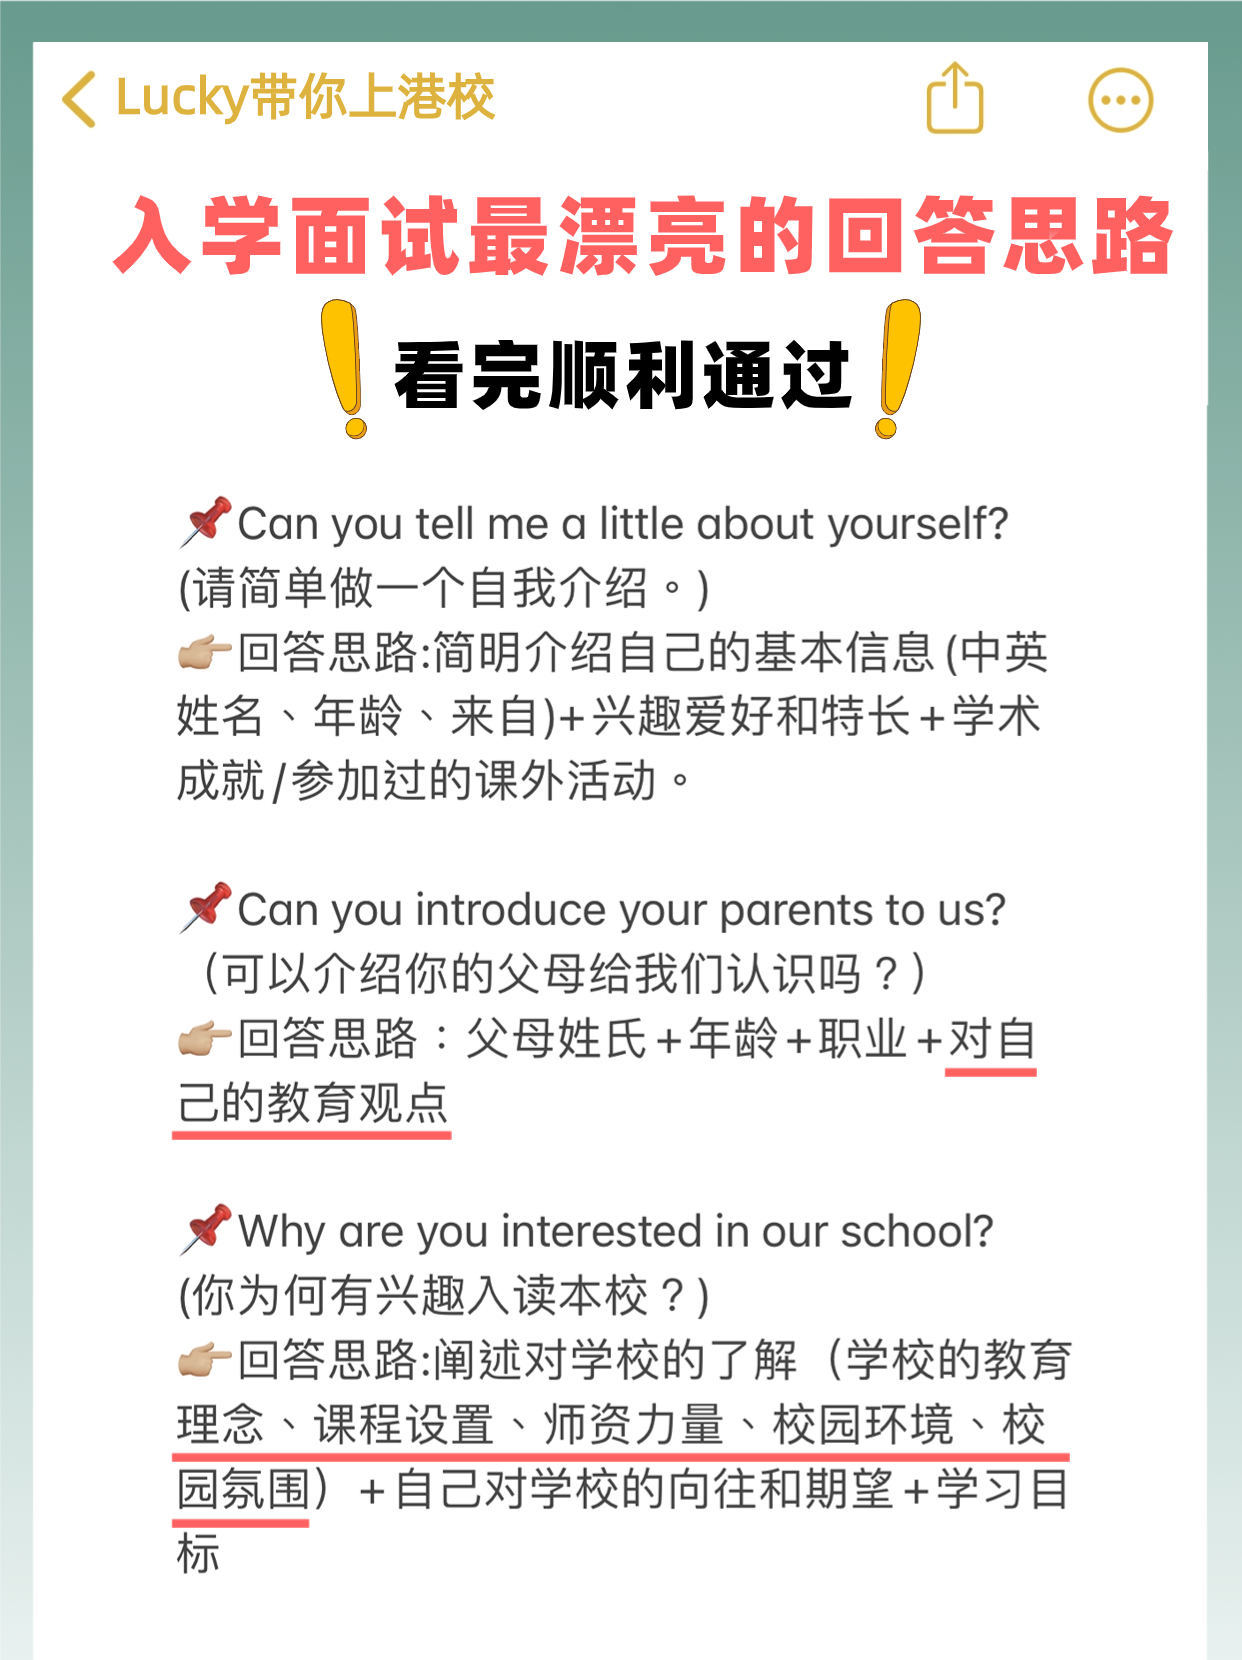 香港国际学校面试问题及答案，看完发现并不难！